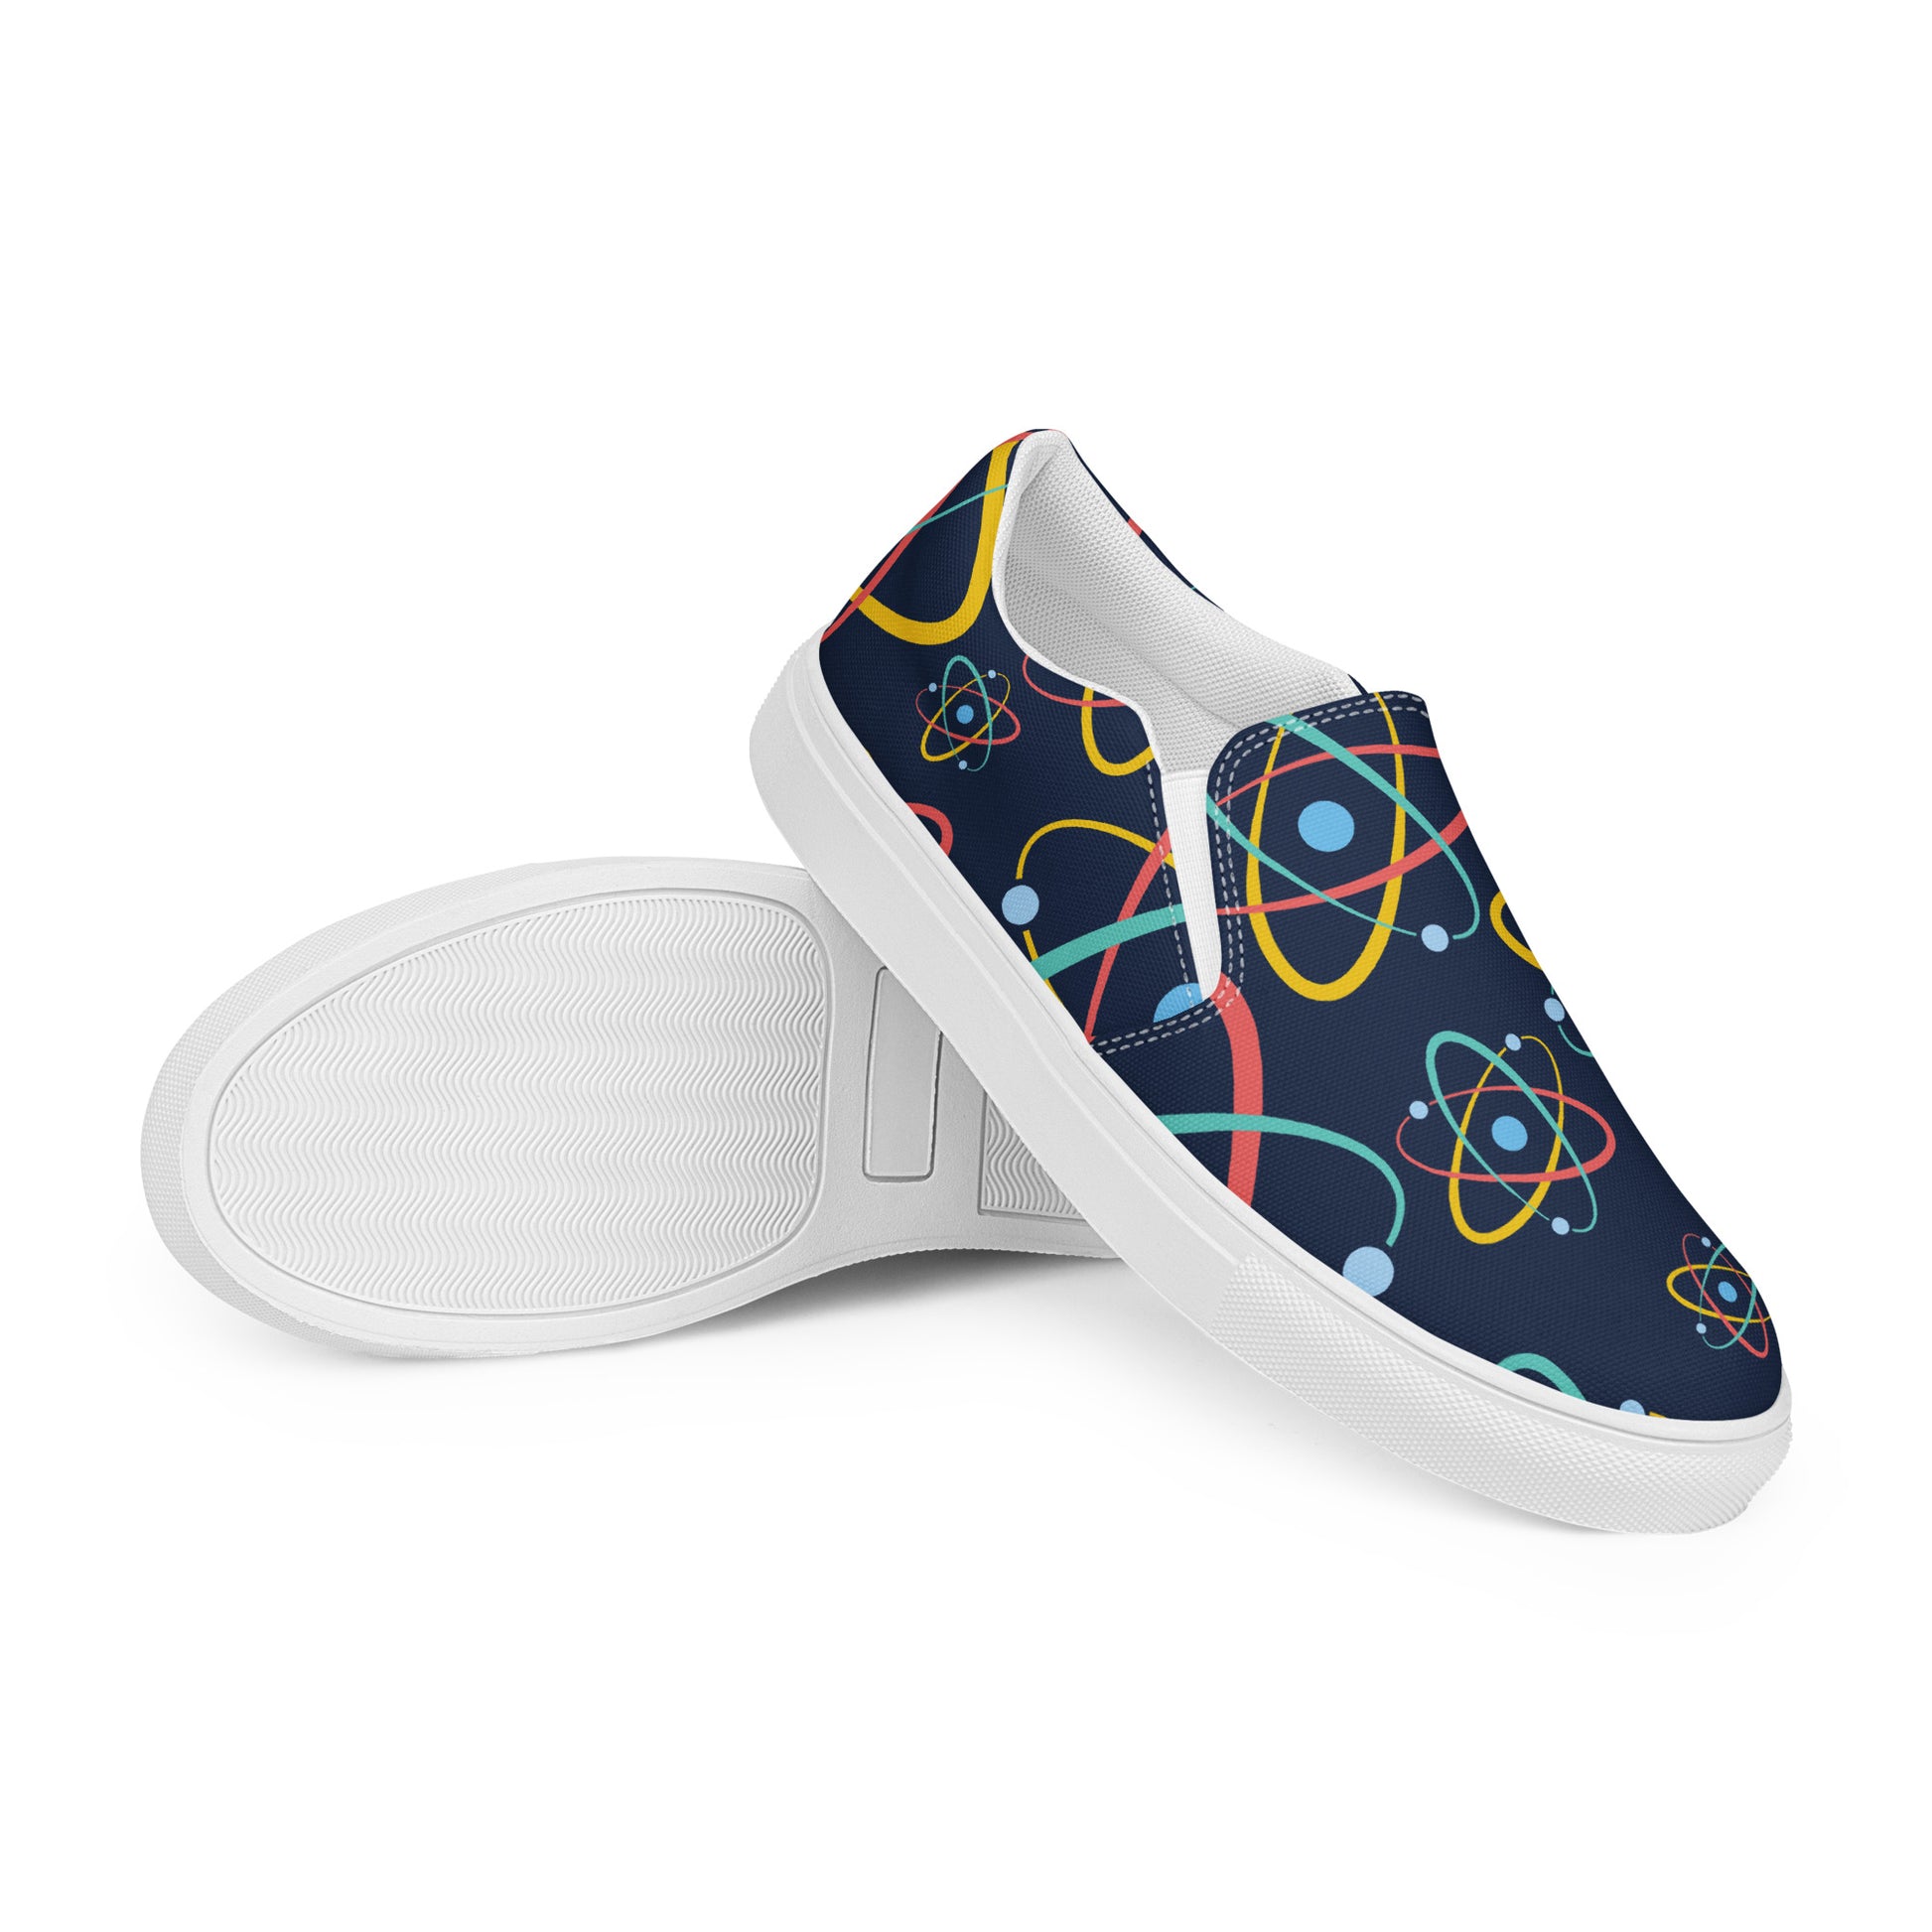 Atoms - Men’s slip-on canvas shoes Mens Slip On Shoes